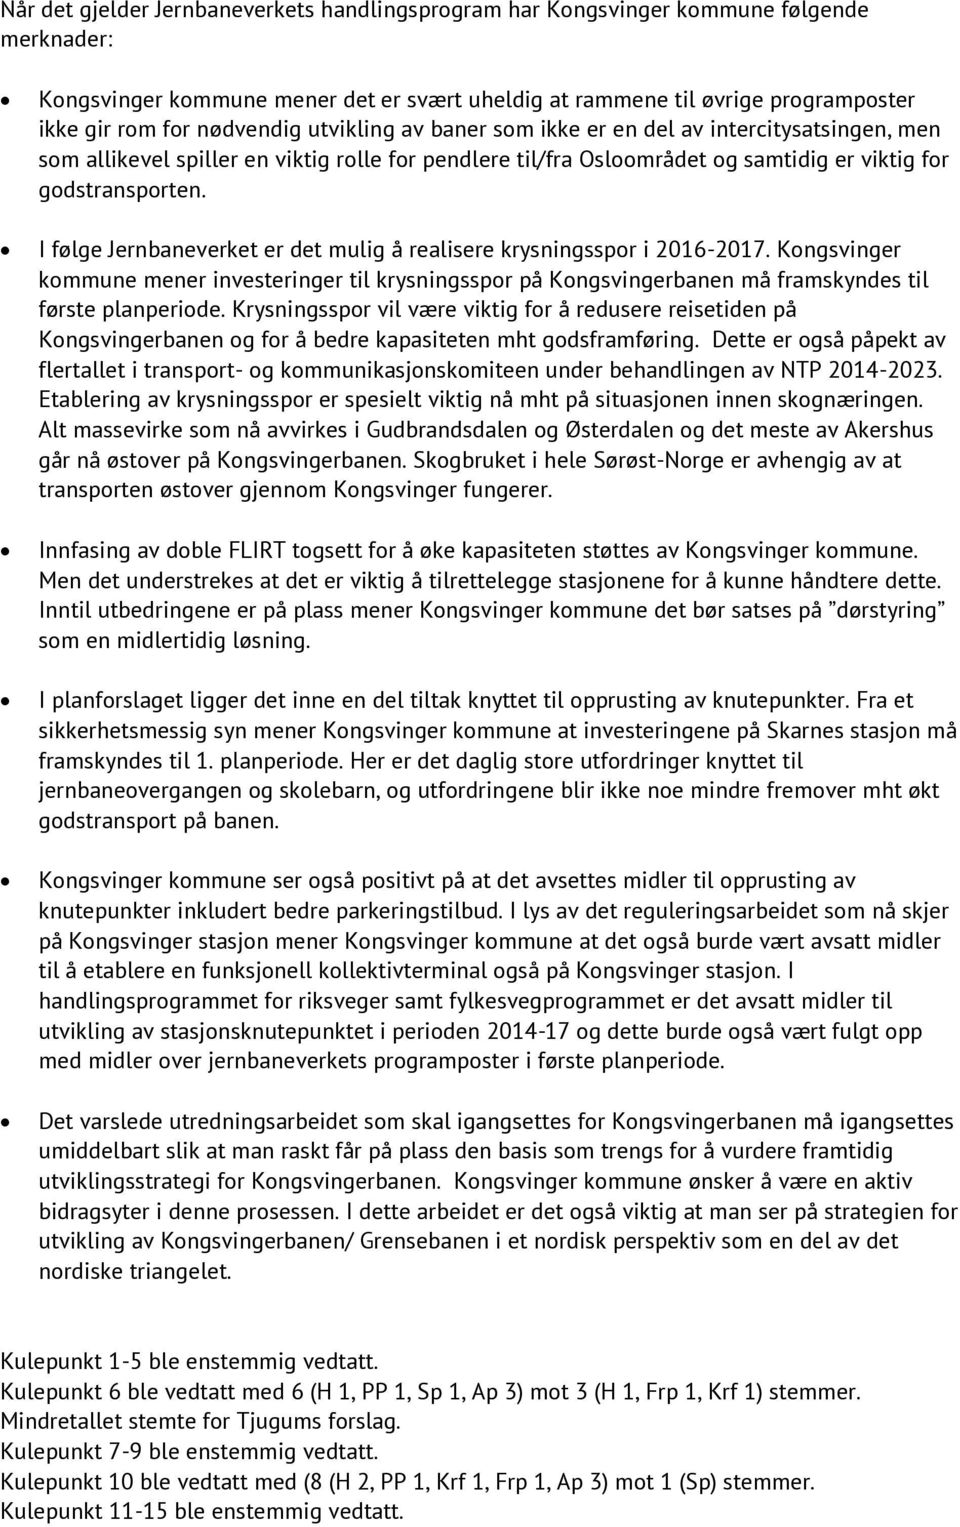 I følge Jernbaneverket er det mulig å realisere krysningsspor i 2016-2017. Kongsvinger kommune mener investeringer til krysningsspor på Kongsvingerbanen må framskyndes til første planperiode.